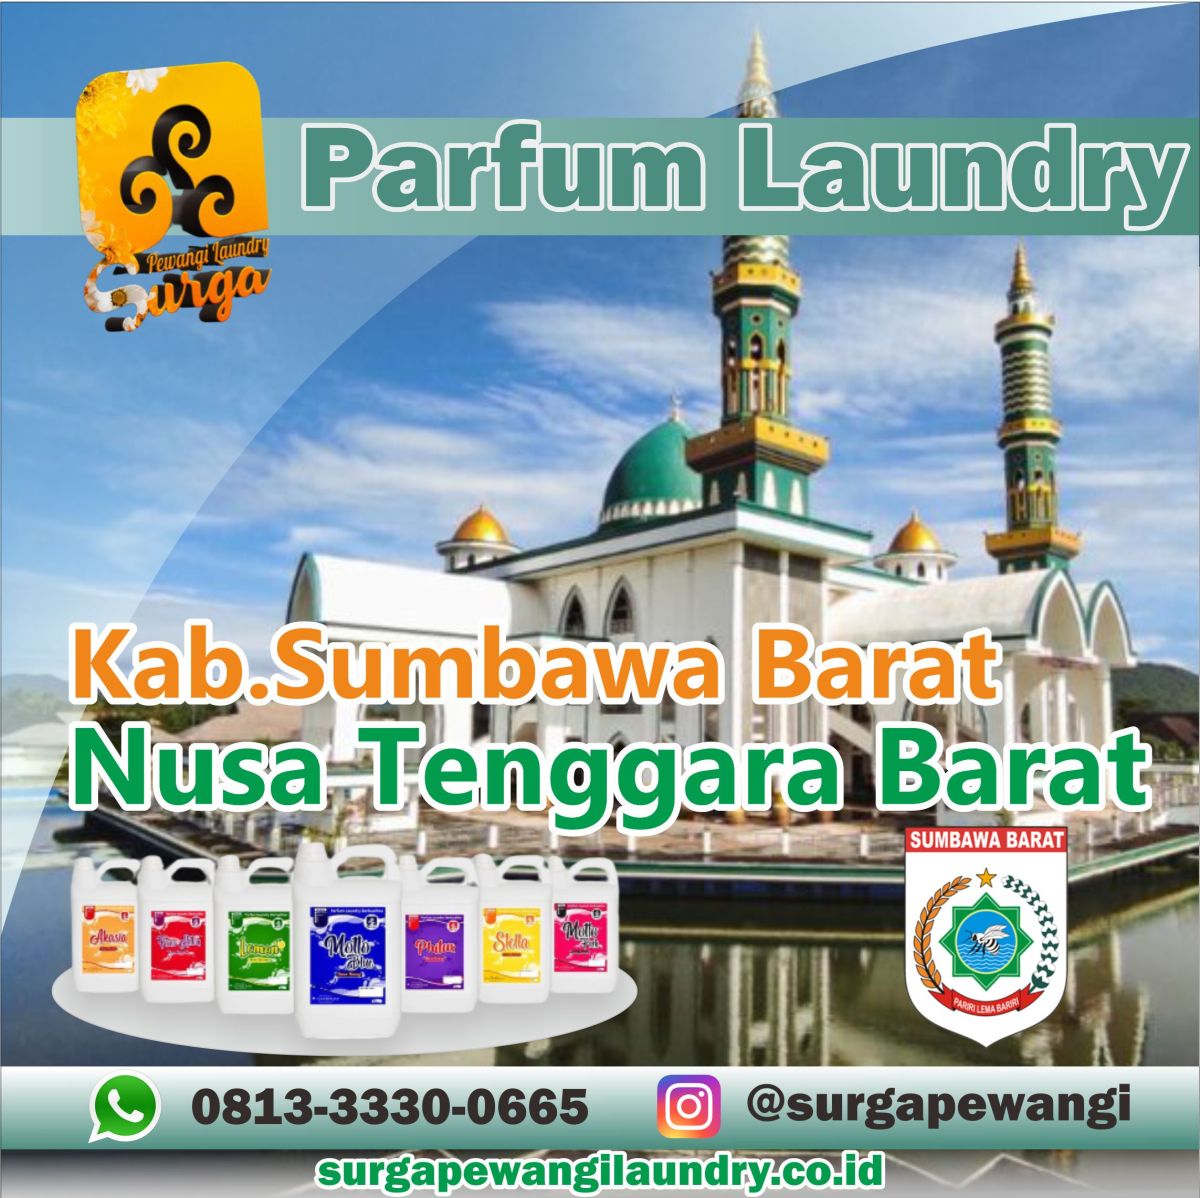 Parfum Laundry Kabupaten Sumbawa Barat, Nusa Tenggara Barat